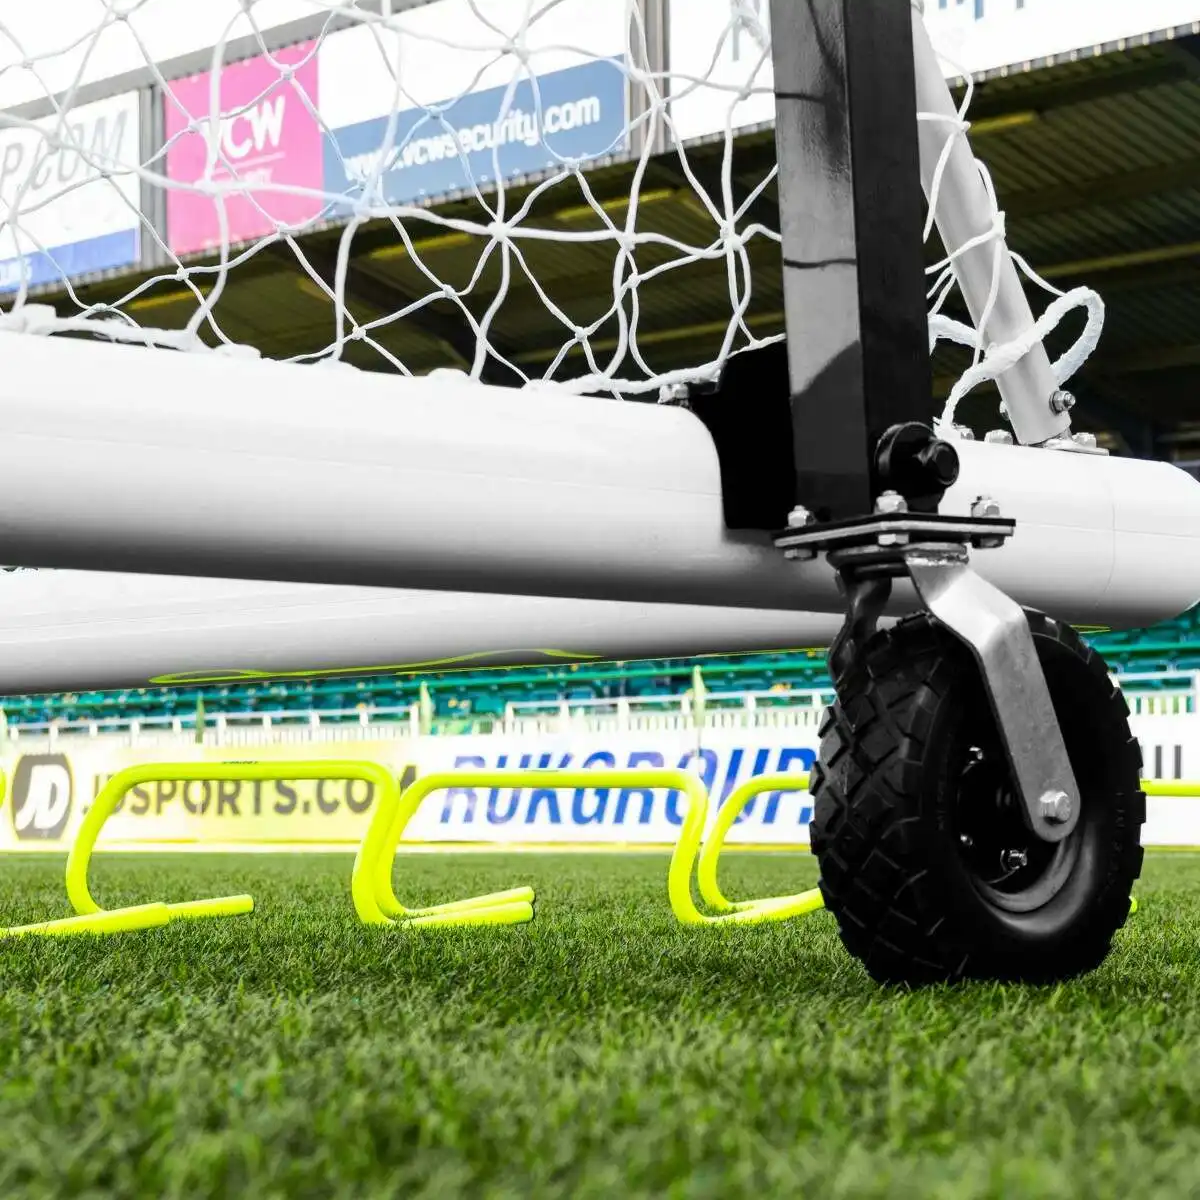 Wheels for soccer goal Soccer goal rotate 360 degrees standard size